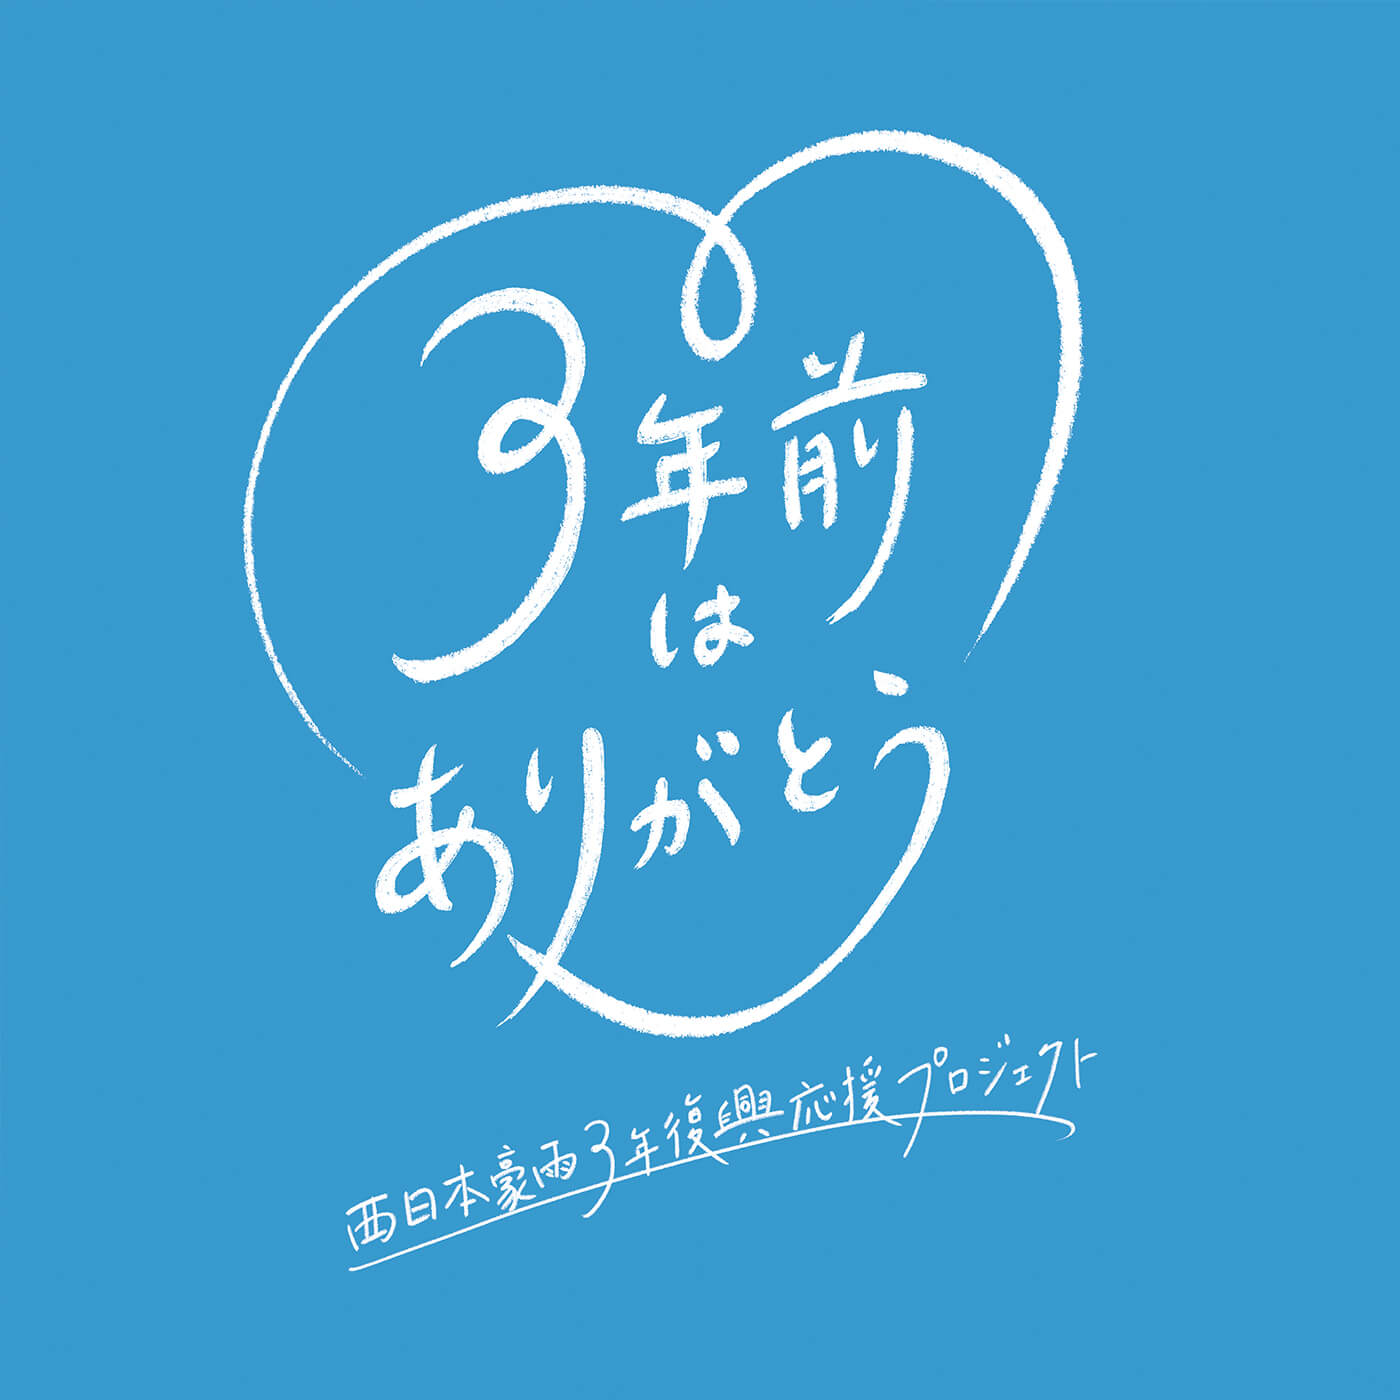 西日本豪雨3年復興応援プロジェクト「3年前はありがとう」ロゴマーク